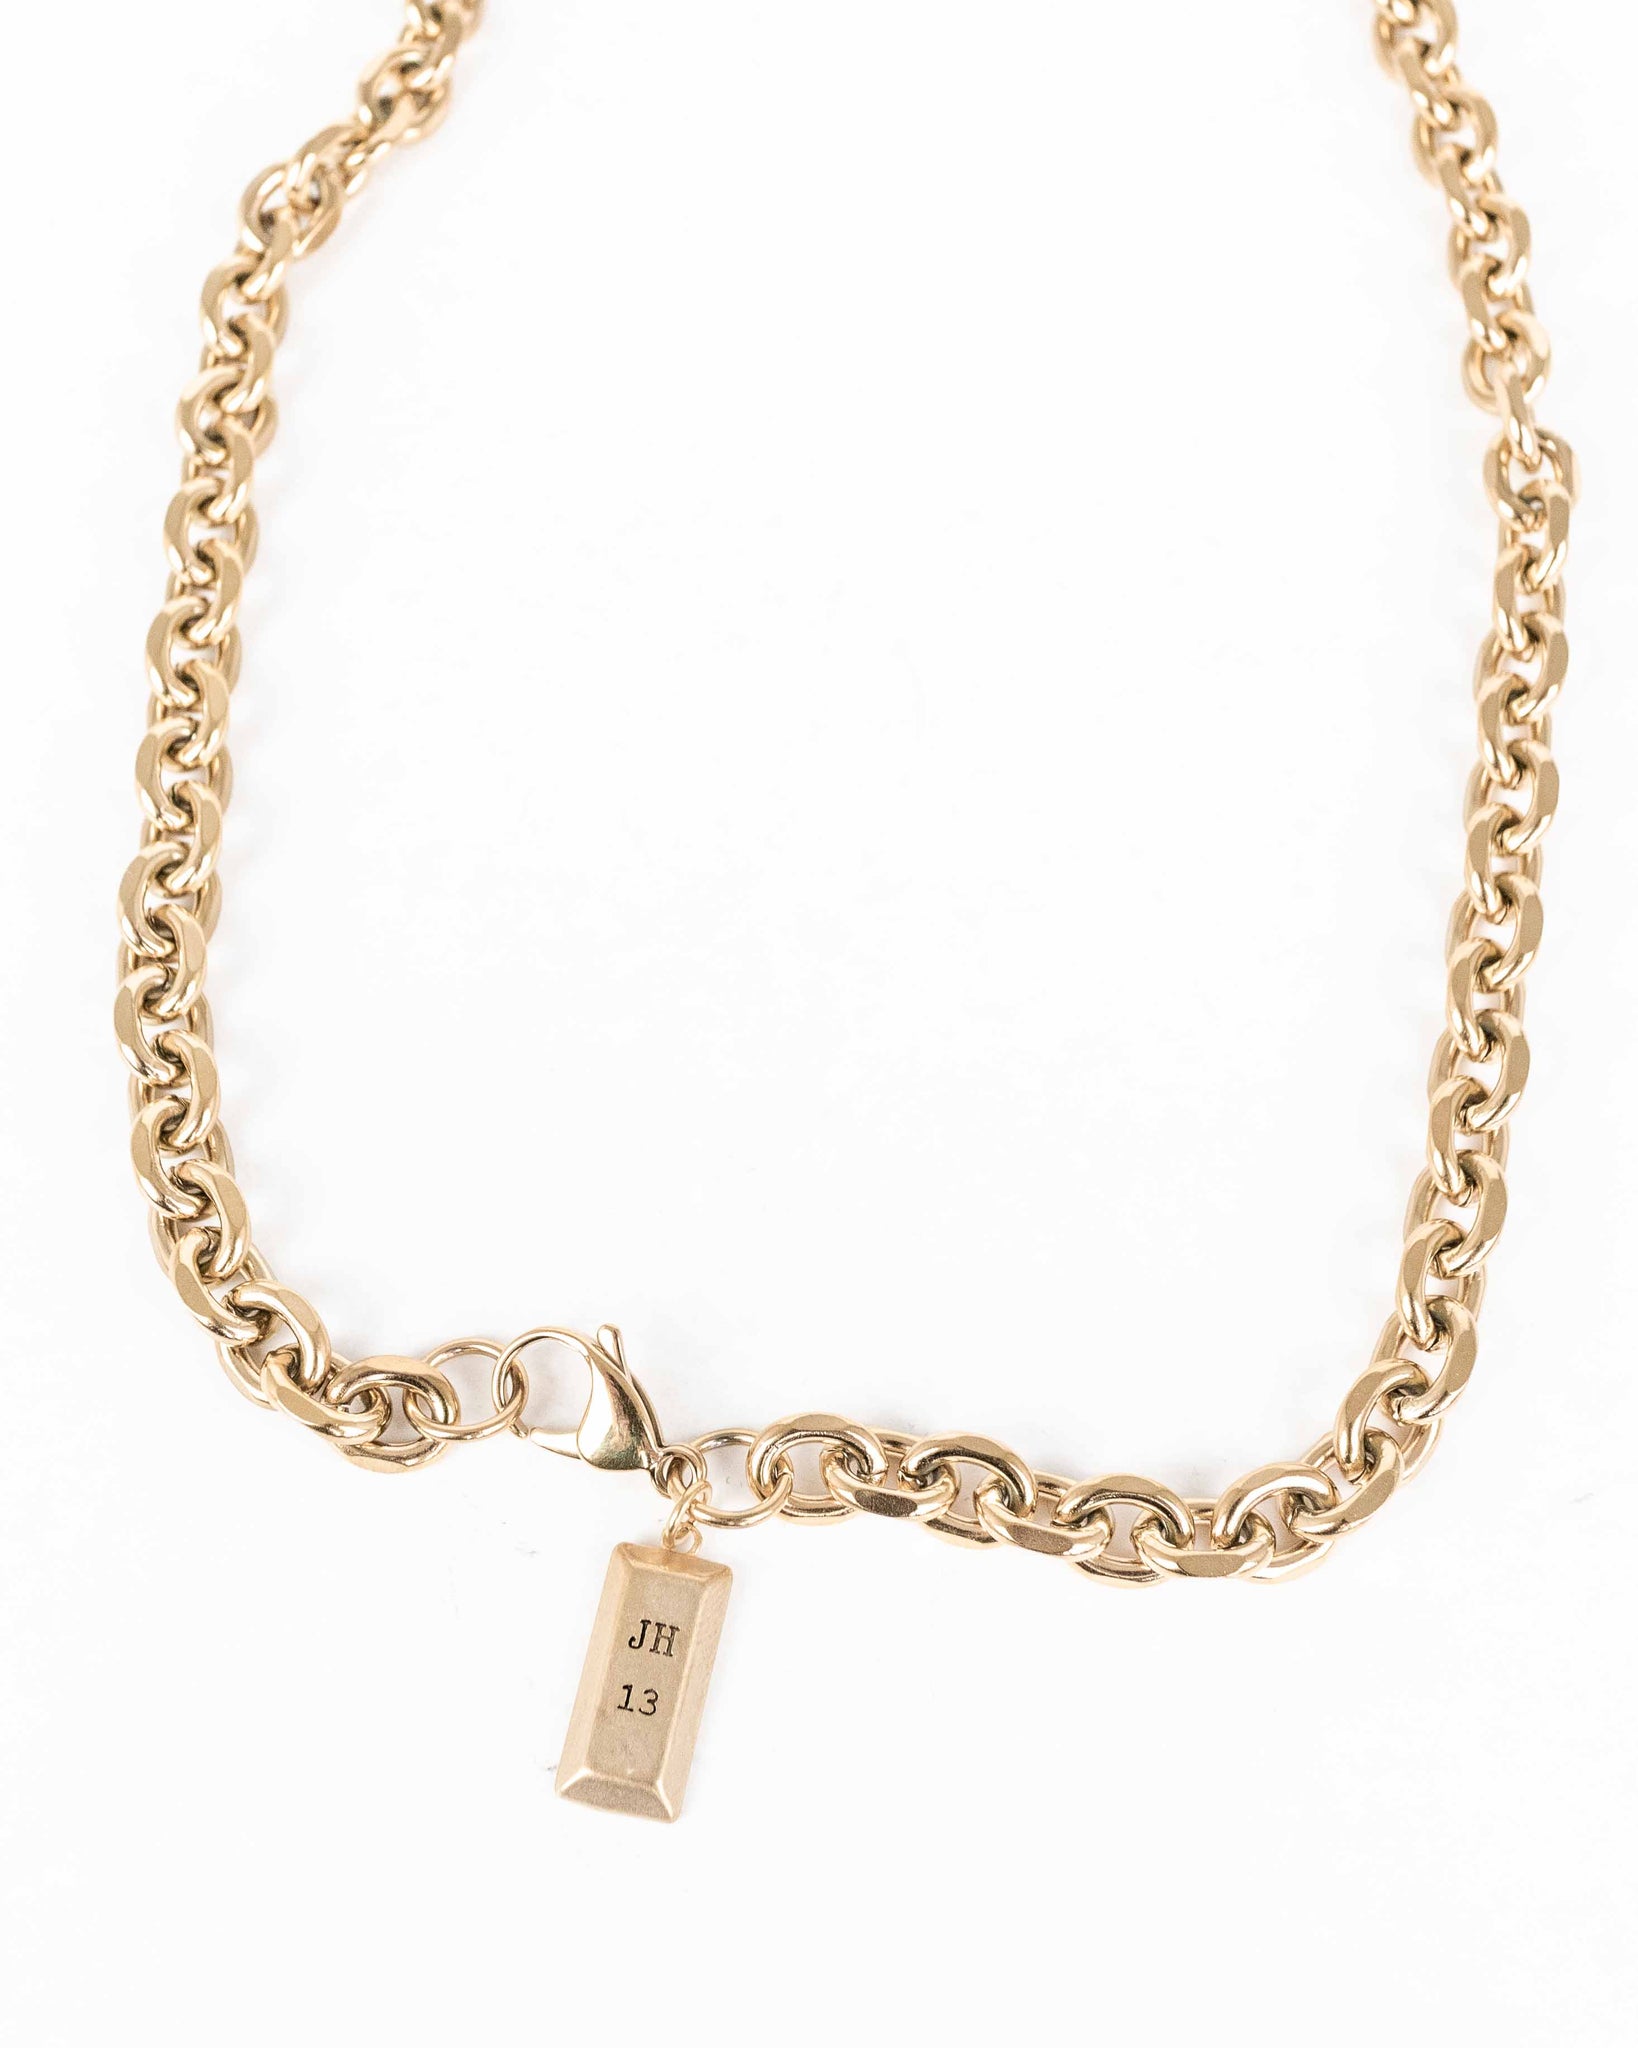 Minnesota Necklace - Gold